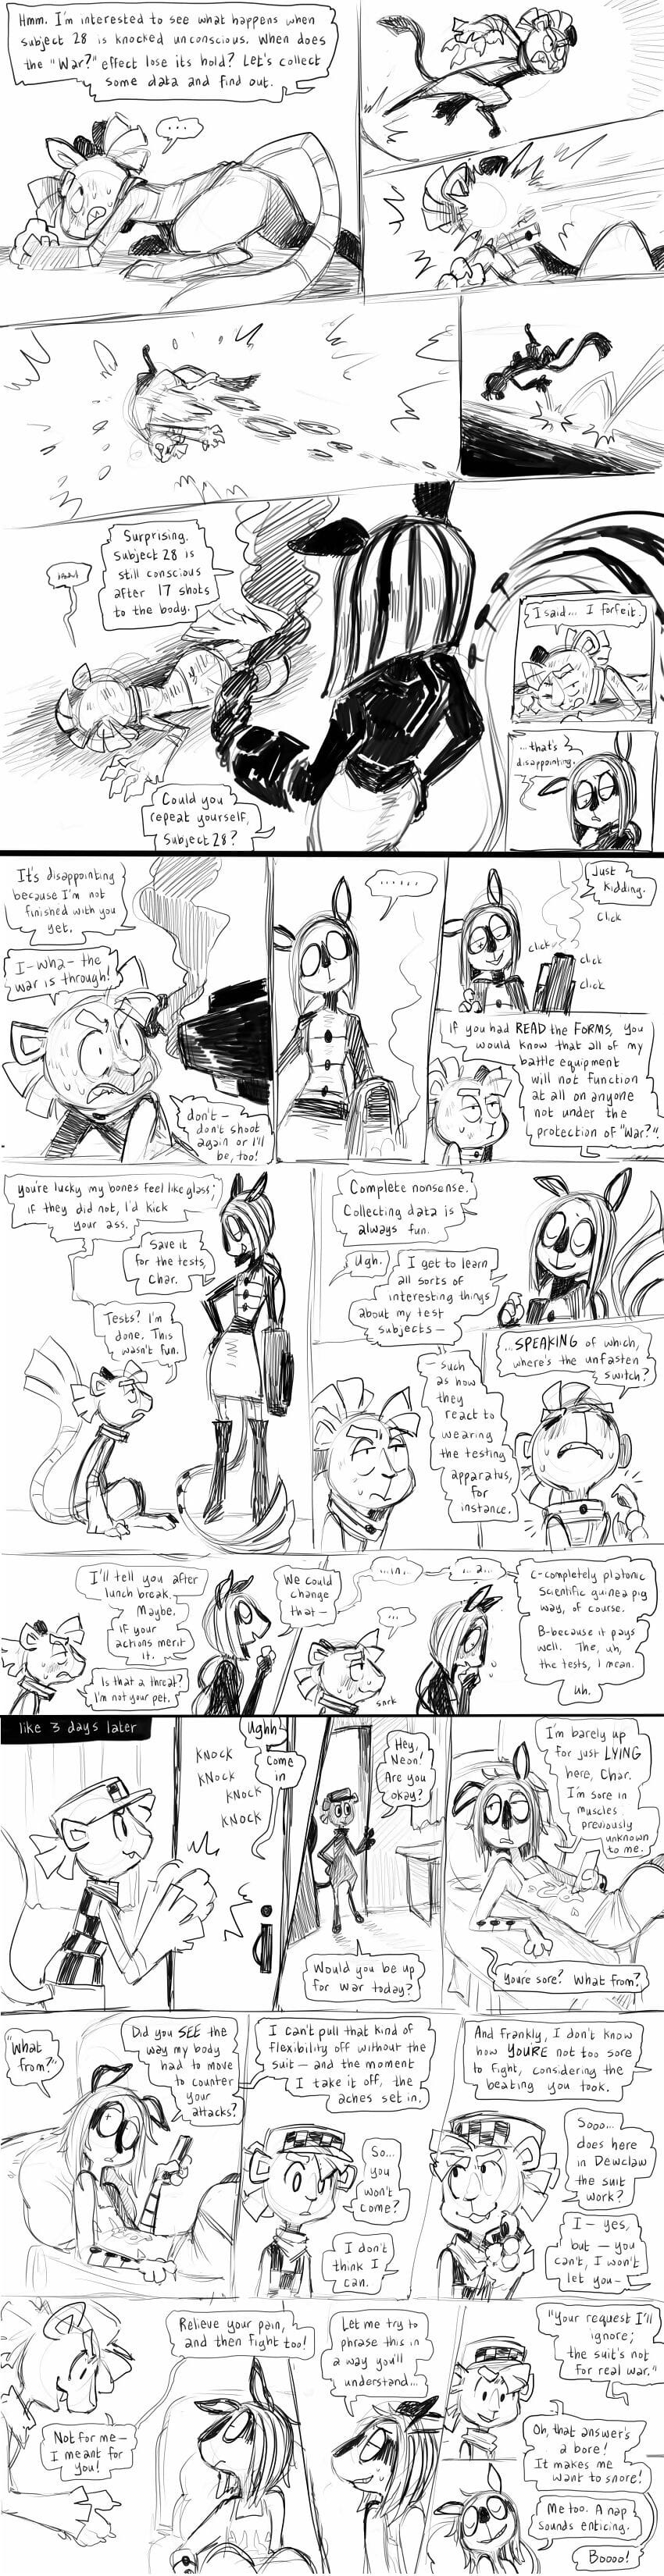 Miscellaneous comics - part 3 page 1